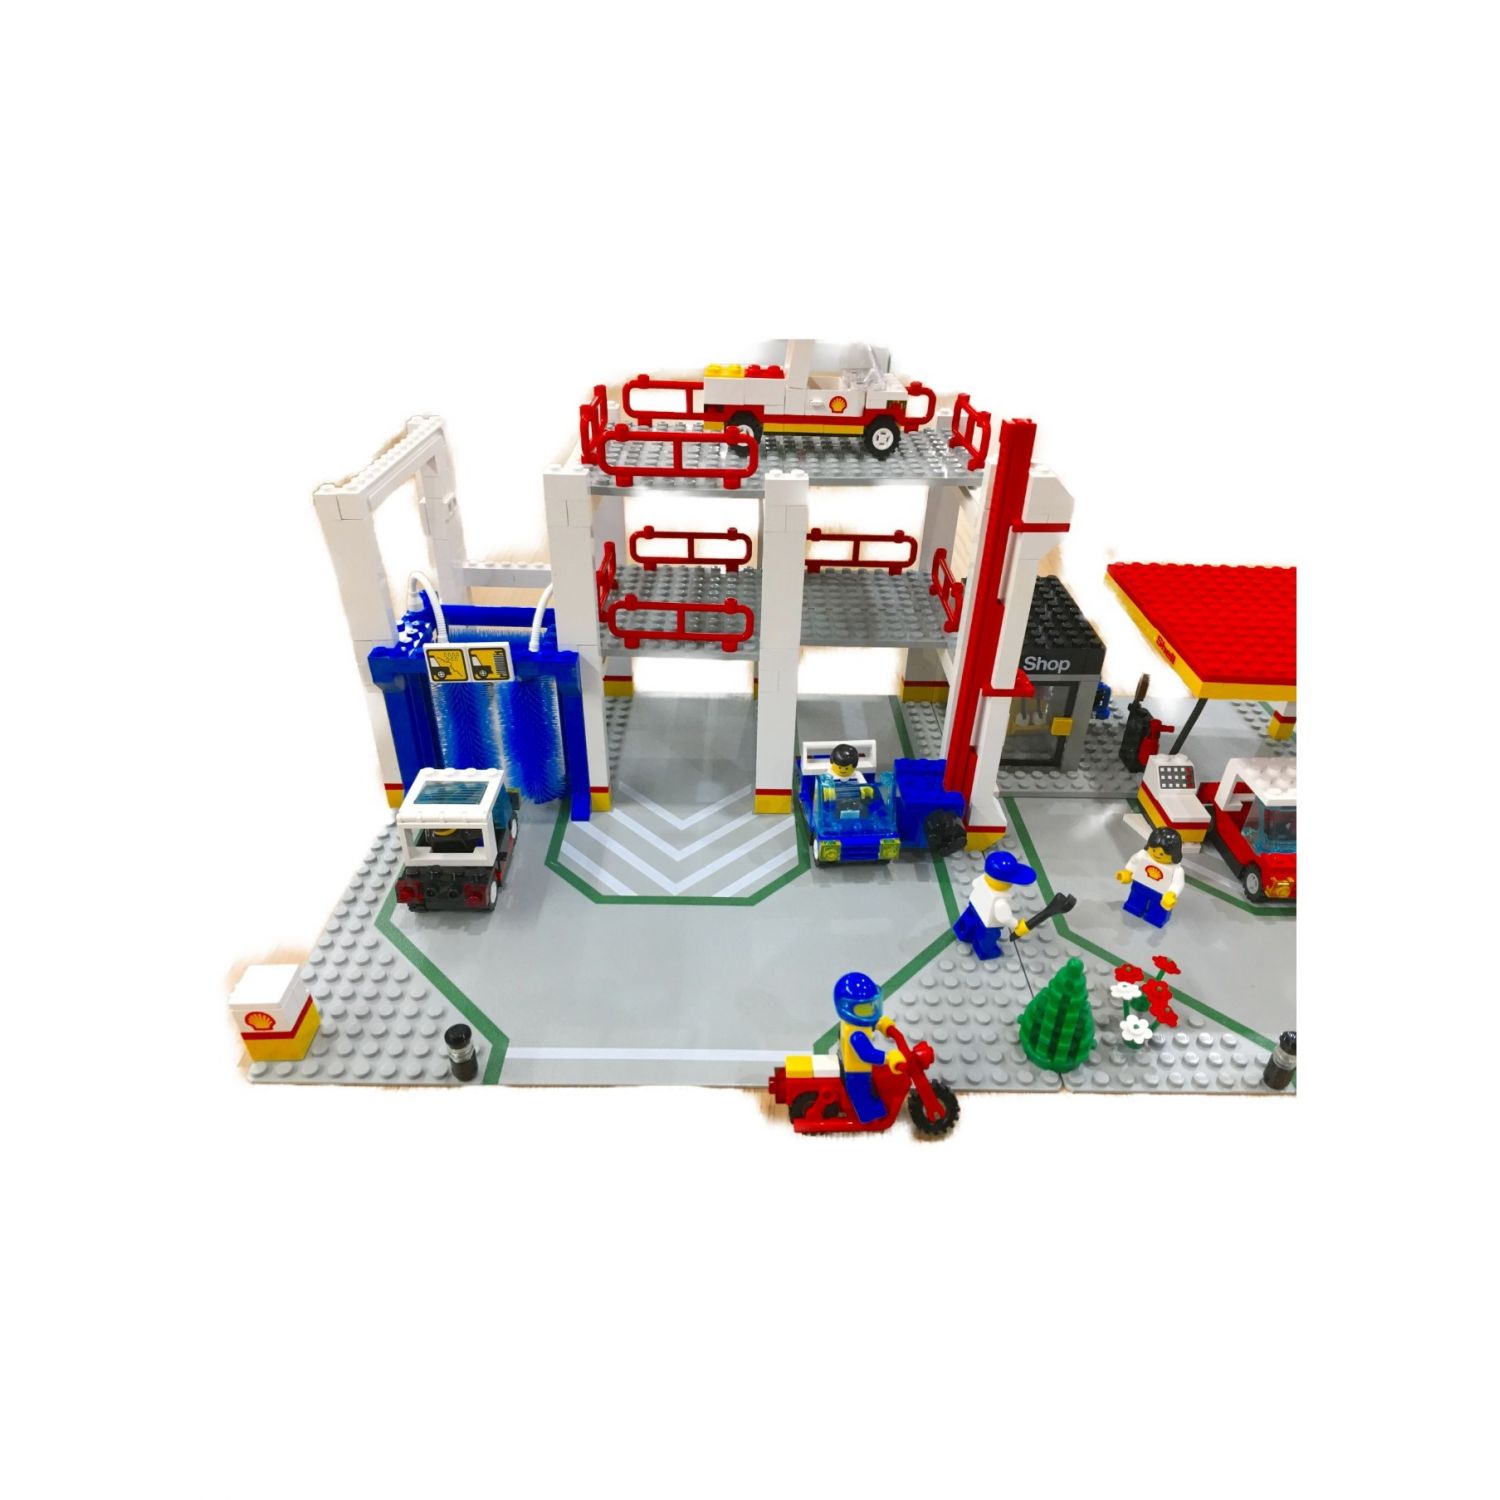 LEGO (レゴ) レゴブロック パーキングセンターレゴランド ＃6394